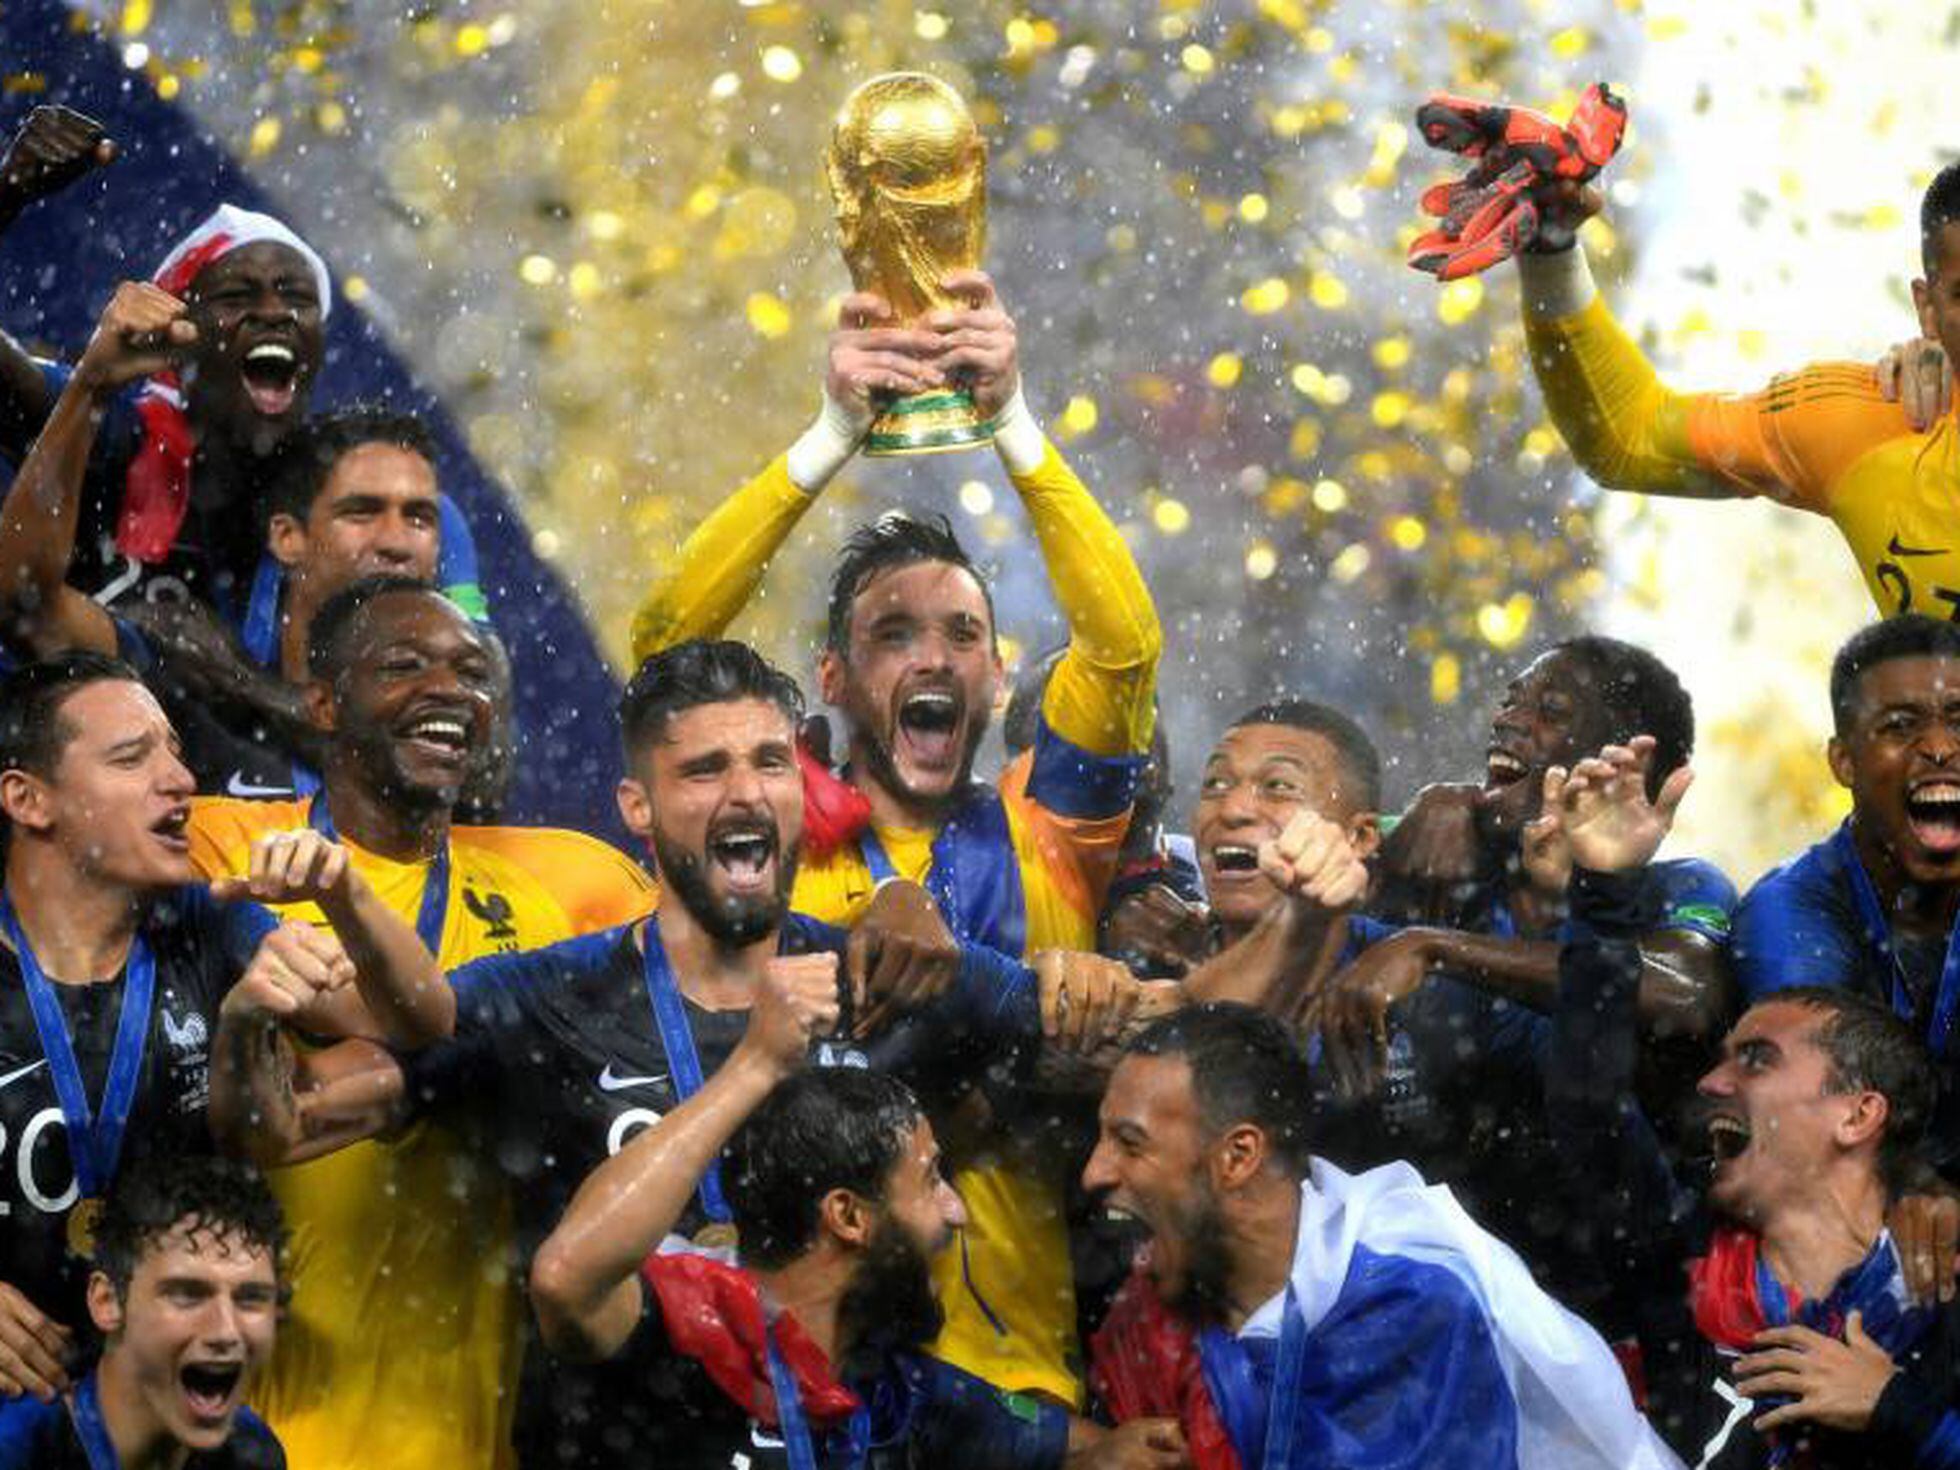 Saiba quanto cada seleção vai ganhar na Copa do Mundo 2018